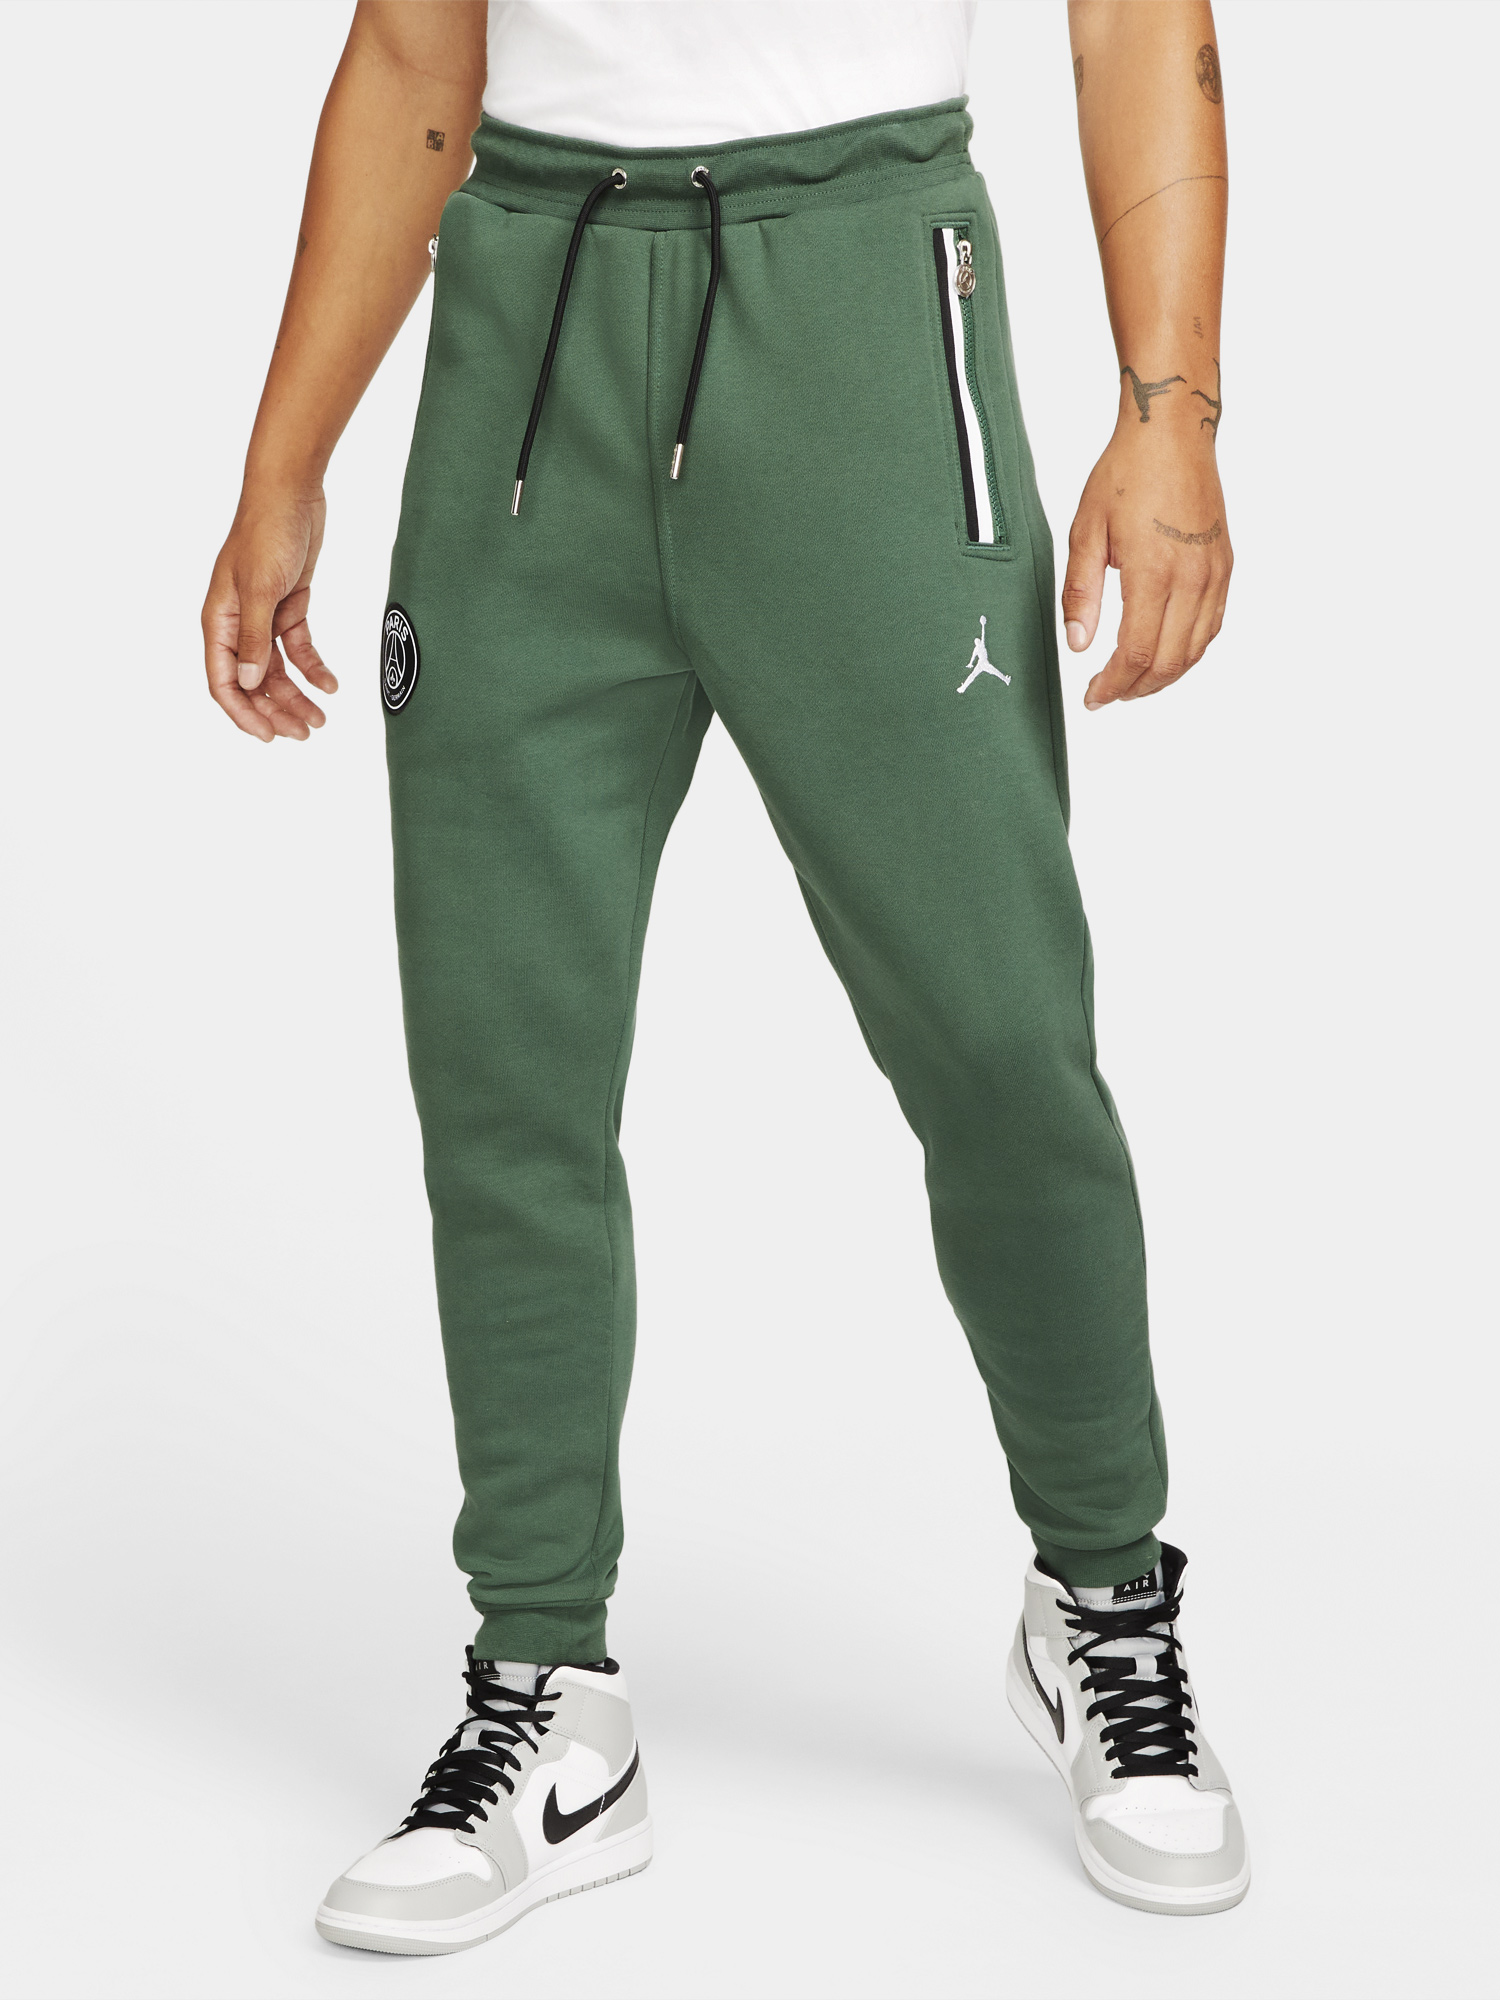 jordan-psg-paris-saint-germain-noble-green-pants-1